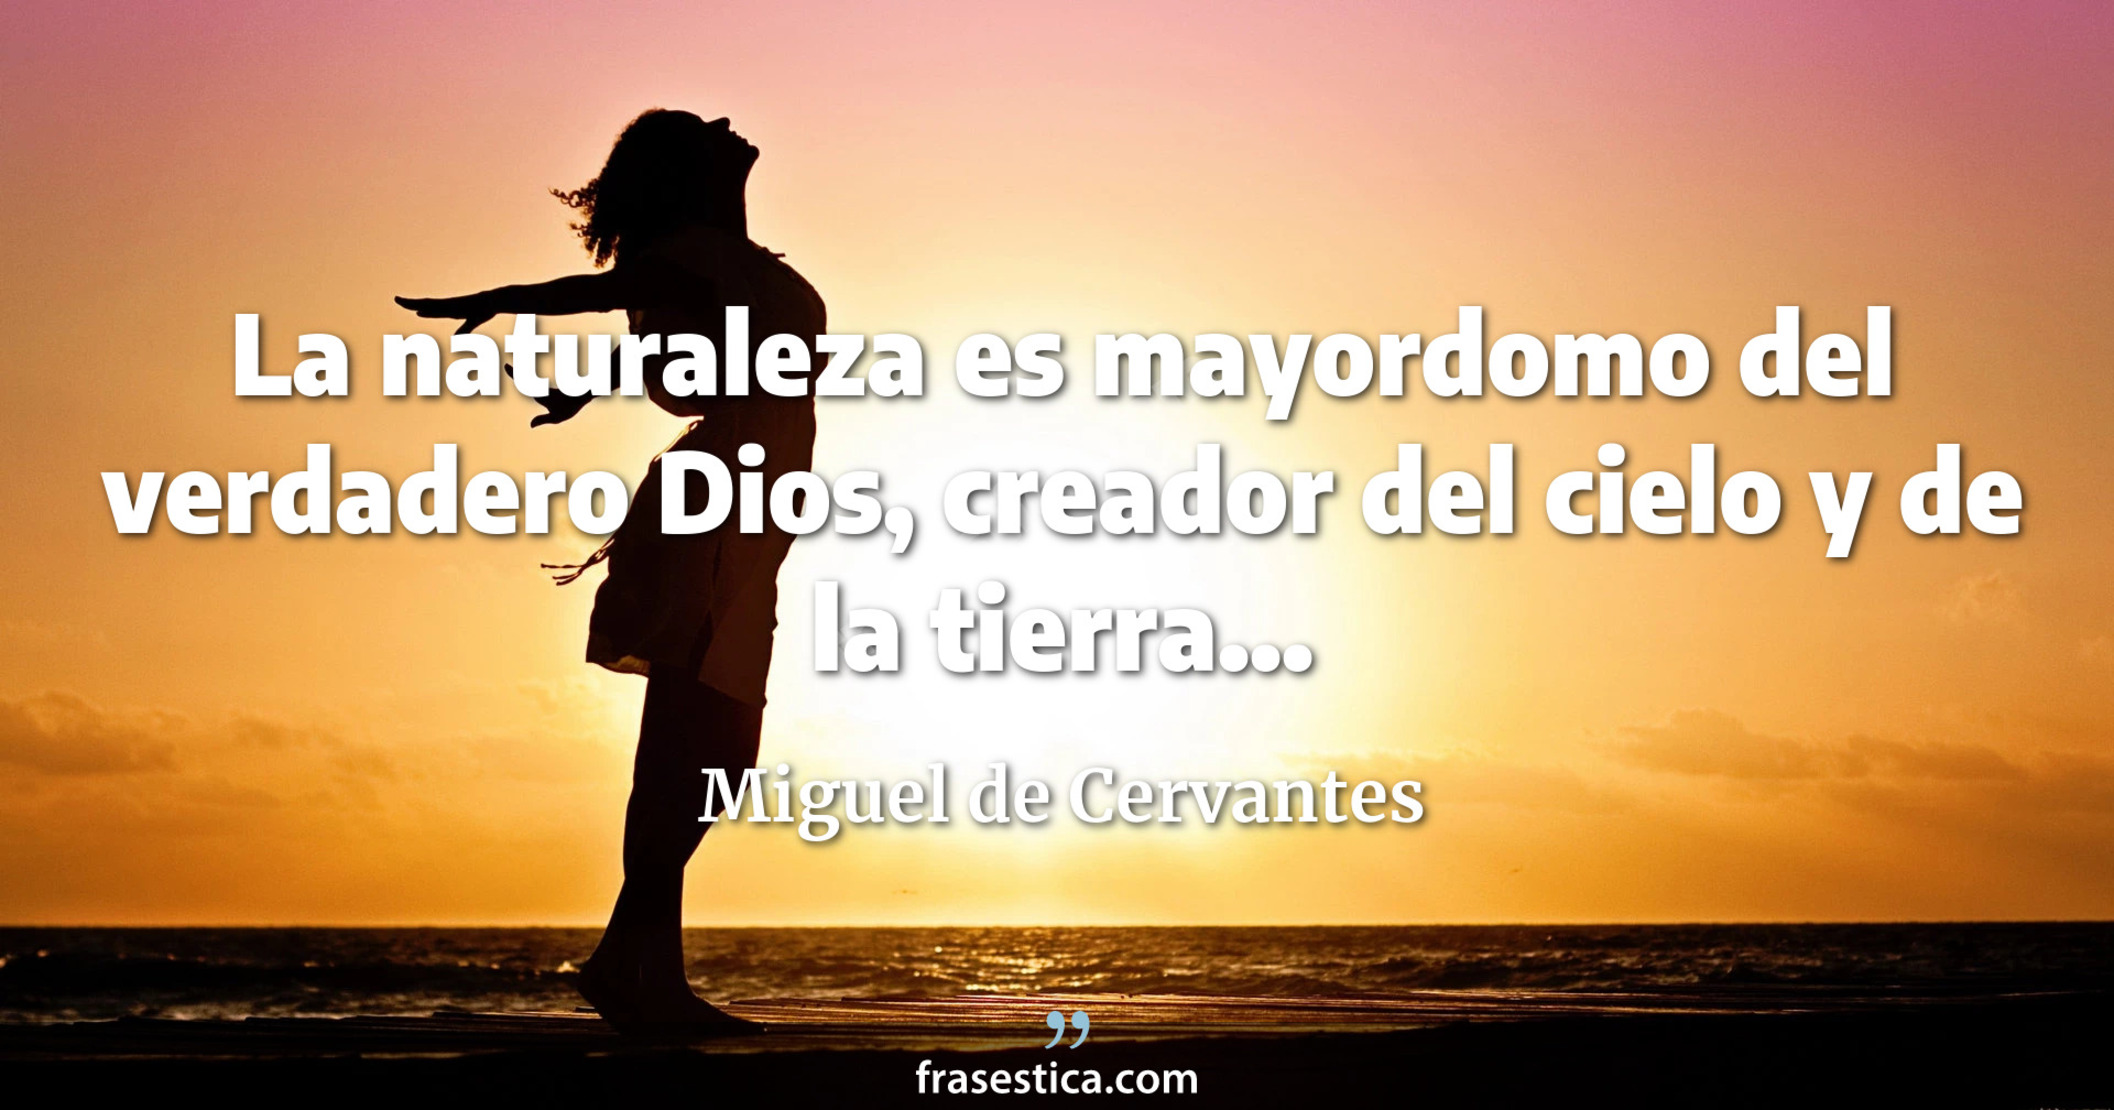 La naturaleza es mayordomo del verdadero Dios, creador del cielo y de la tierra... - Miguel de Cervantes